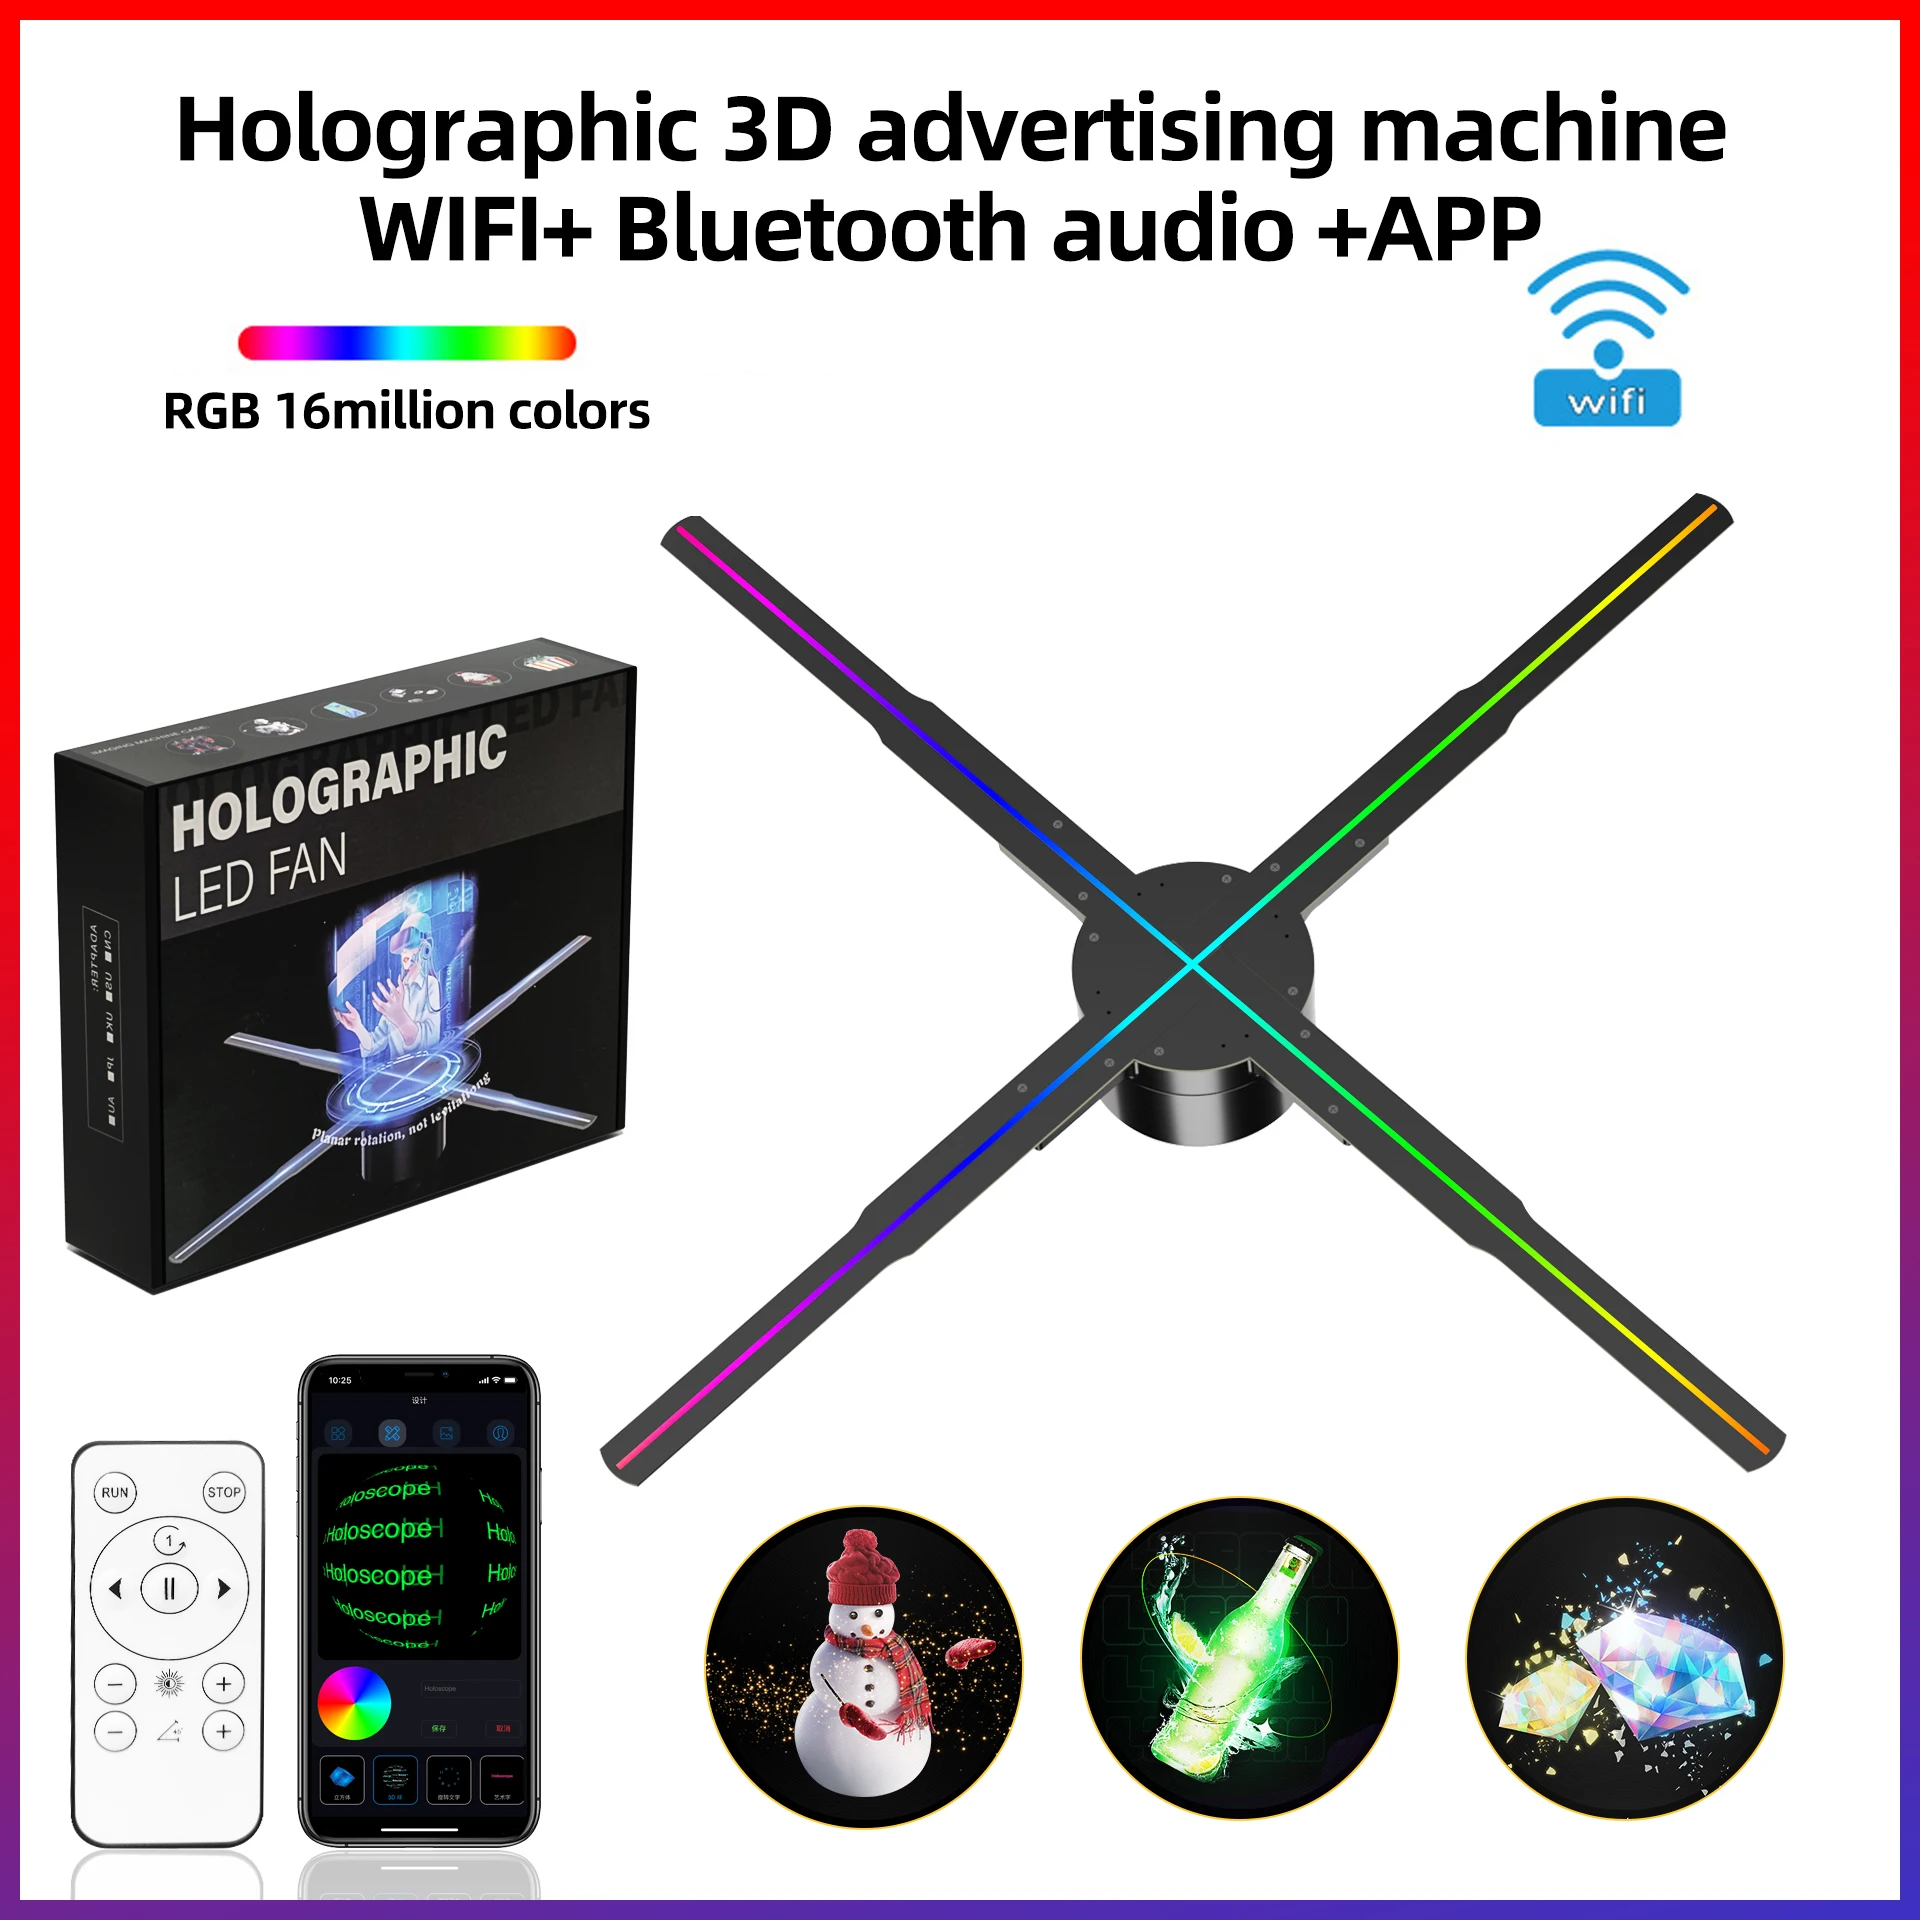 

3D Голограмма, проектор 50 см, Wi-Fi, управление через приложение, светодиодный дисплей, знак, логотип, голограмма, Ханьская настенная рекламная машина, настенная